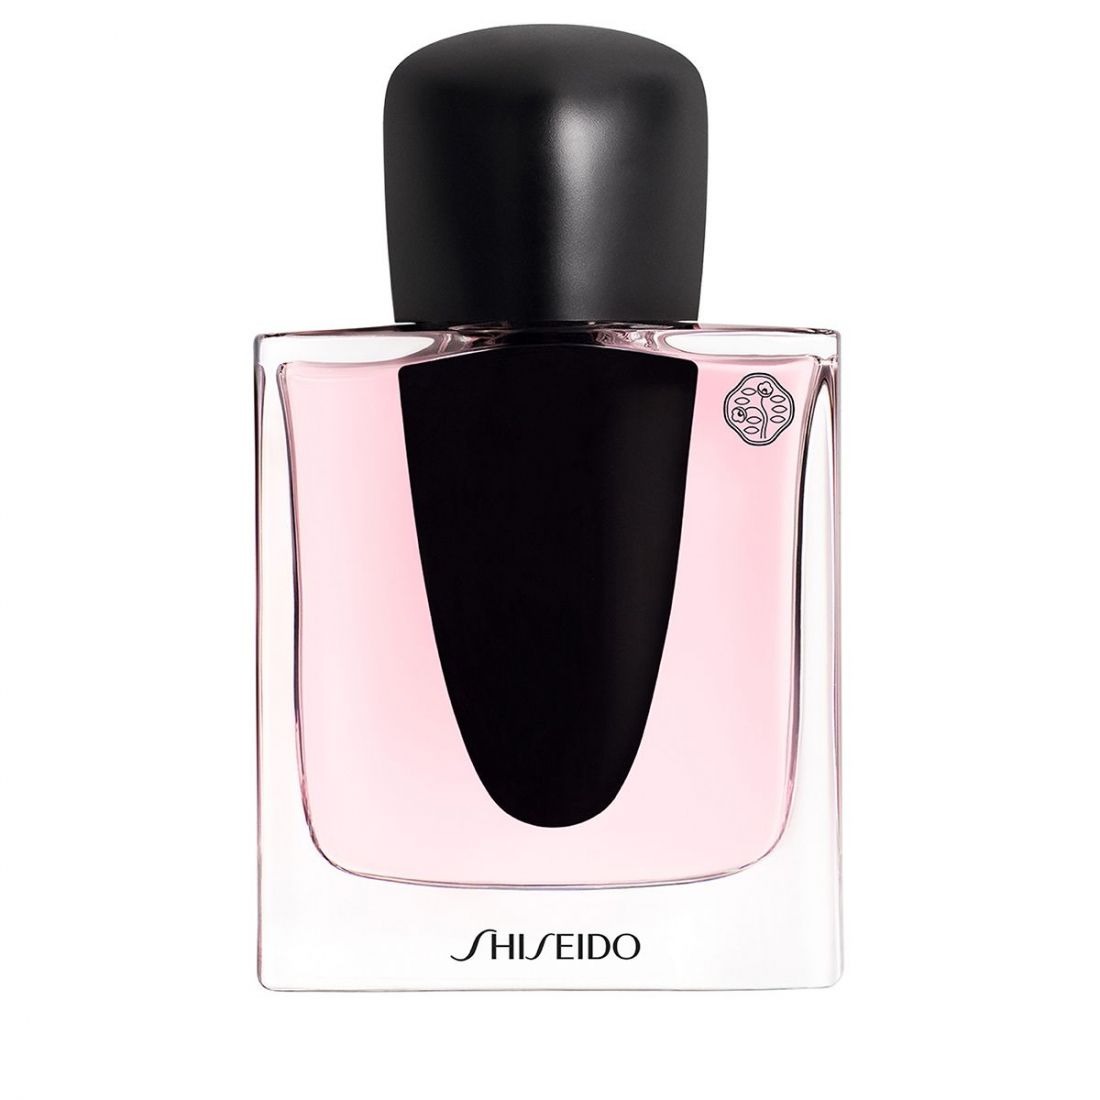 Shiseido - Eau de parfum 'Ginza' - 50 ml